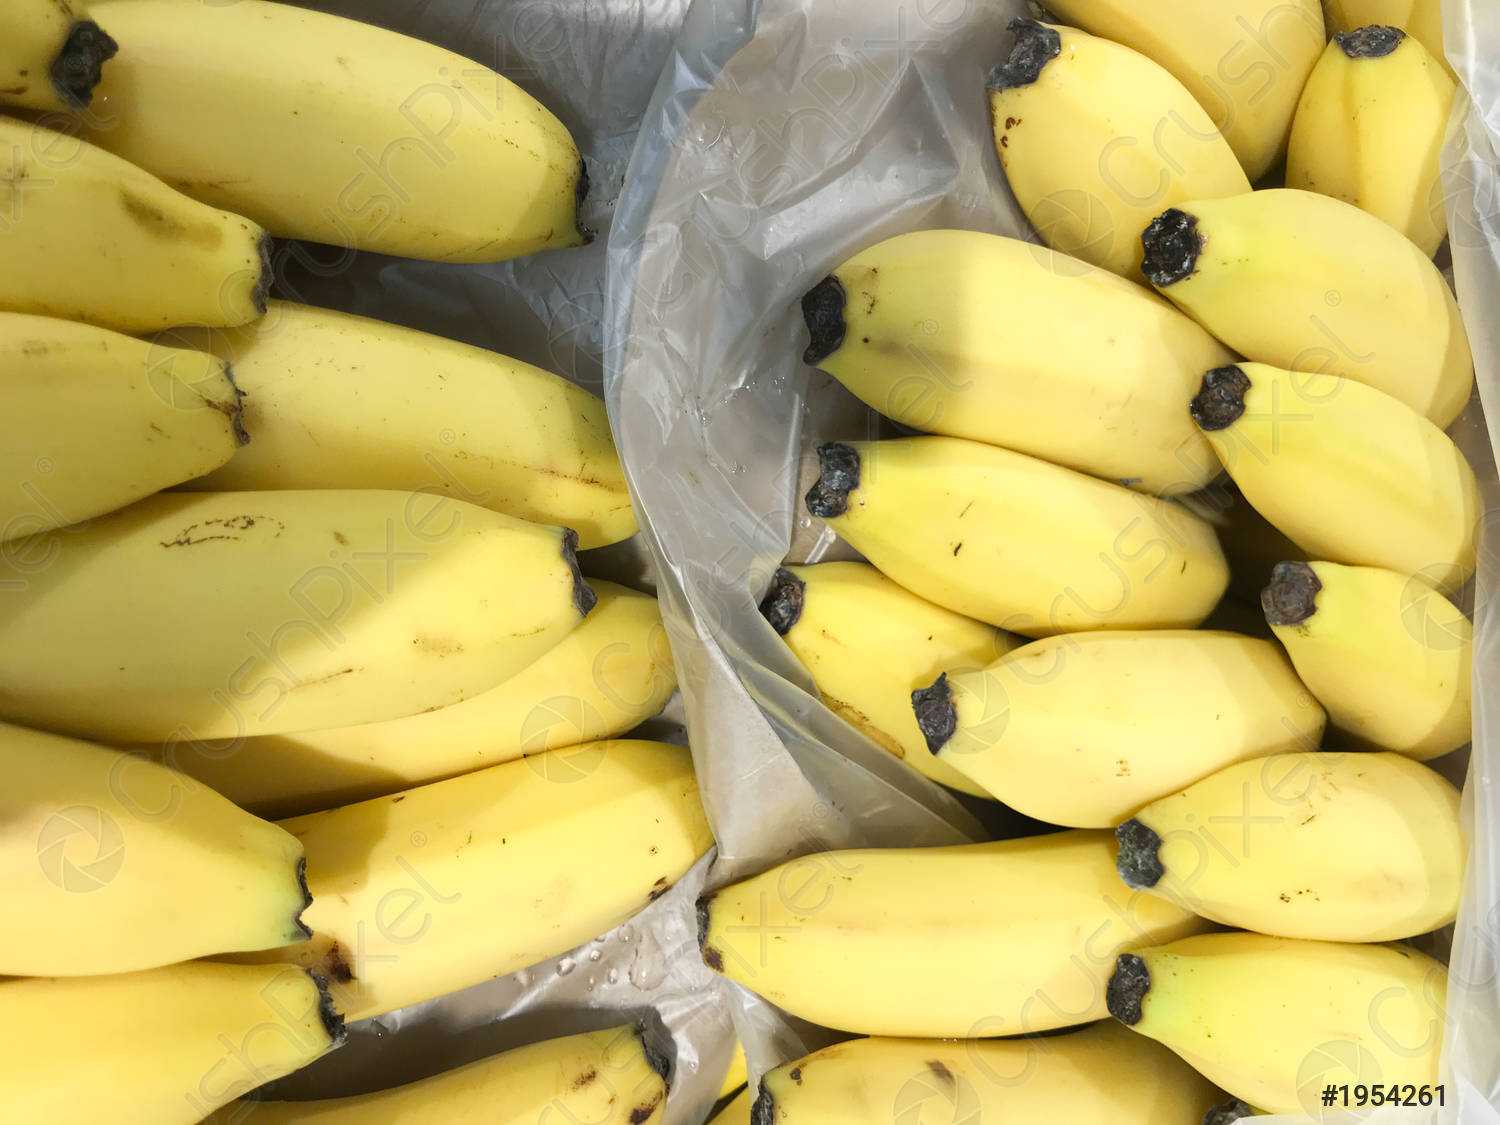 Gdańsk. Biały proszek w kartonach z bananami jednej ze znanych sieci. Wezwano policję